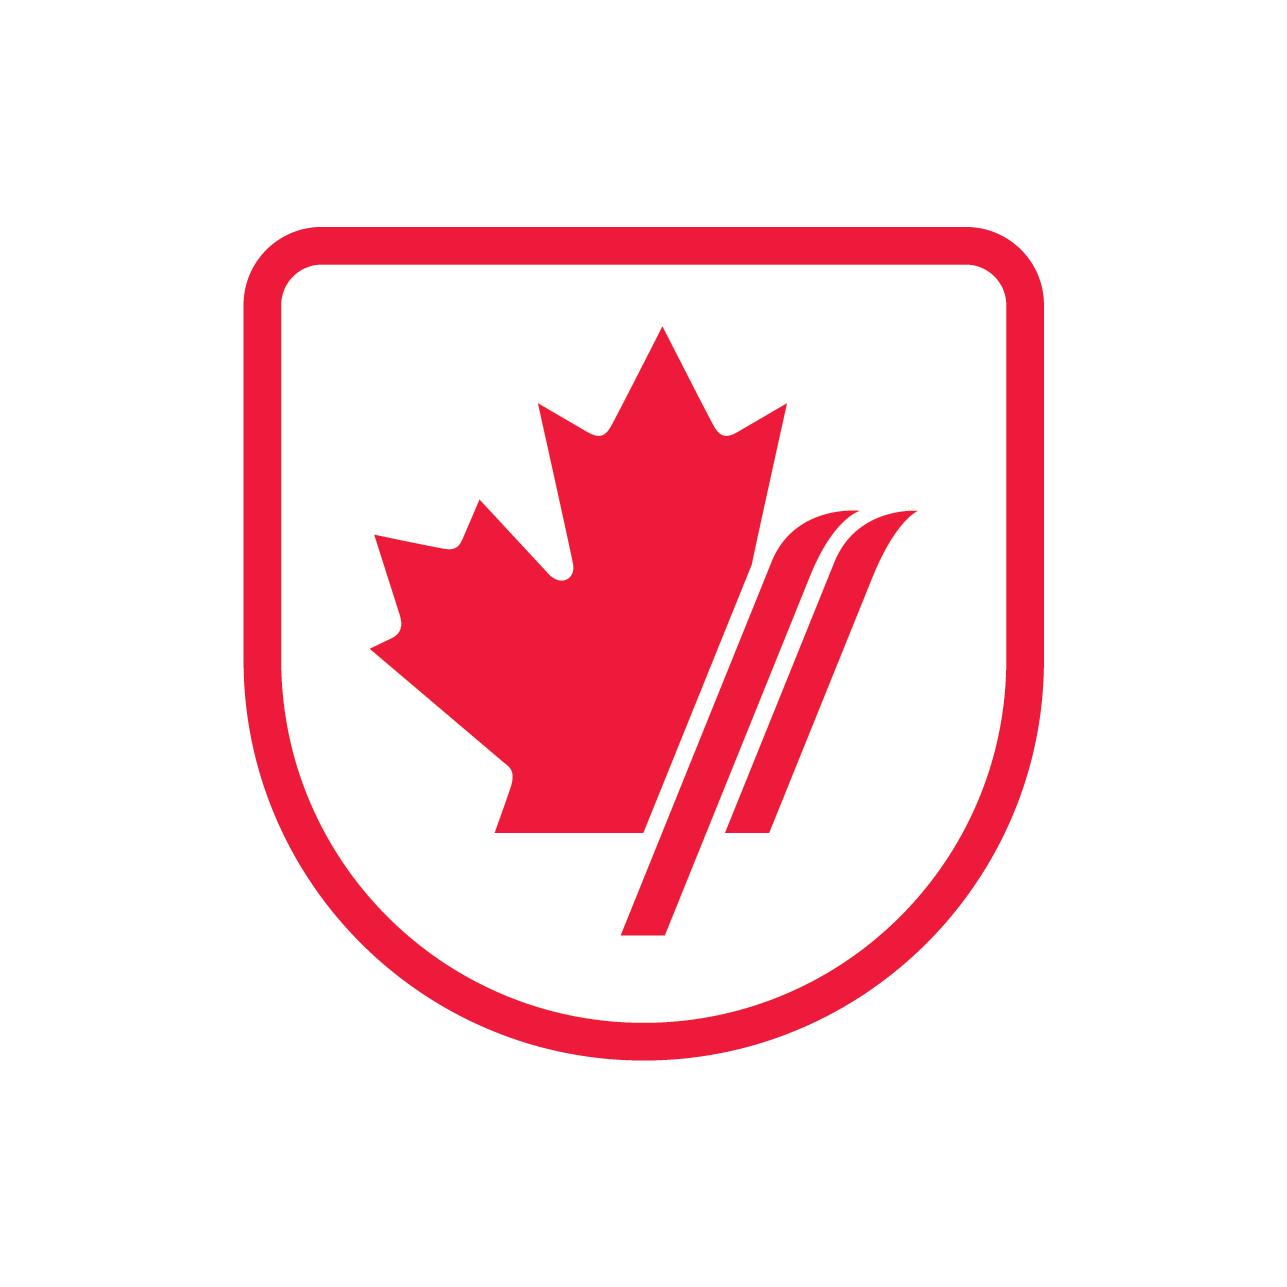 Canada Maple Leaf Olympic Logo - Sports. Team Canada Olympic Team Website